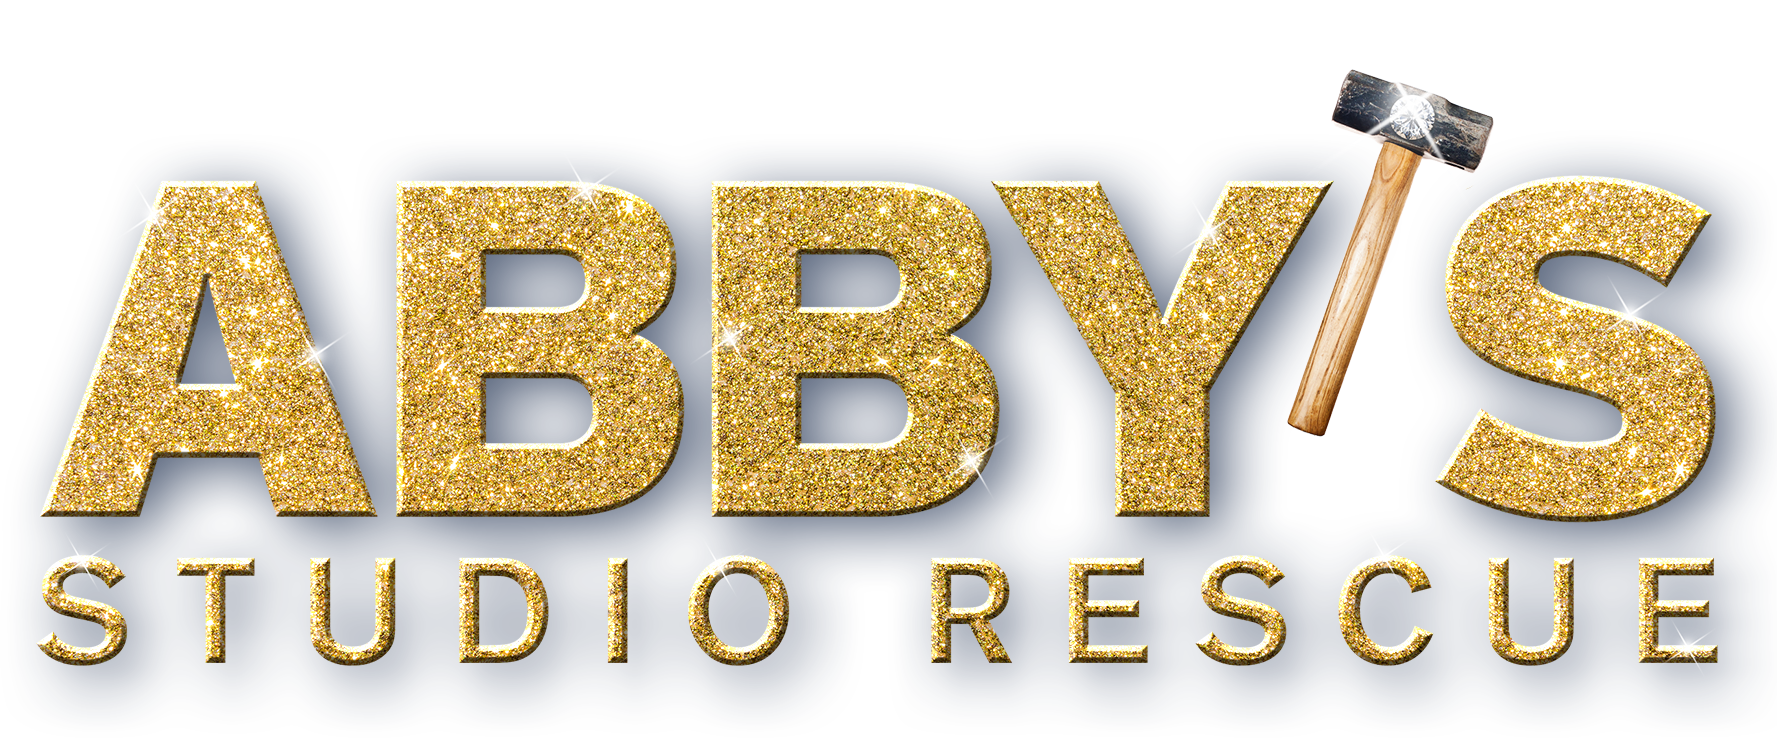 Abby_s-Studio-Rescue-4